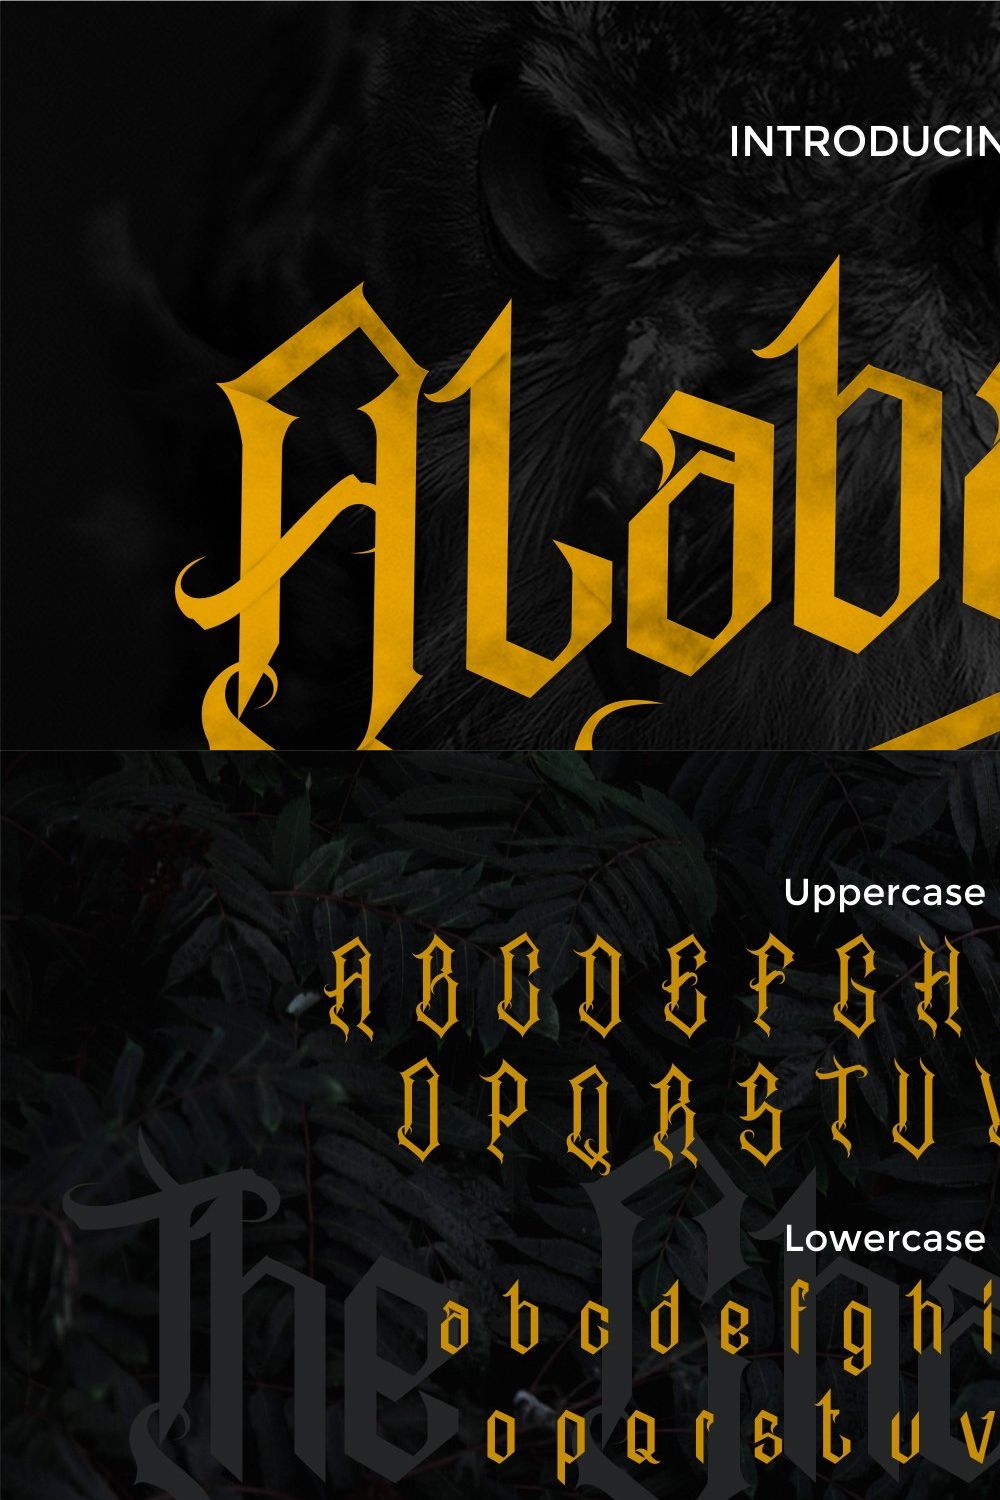 Alabasta - The Blackletter Font pinterest preview image.